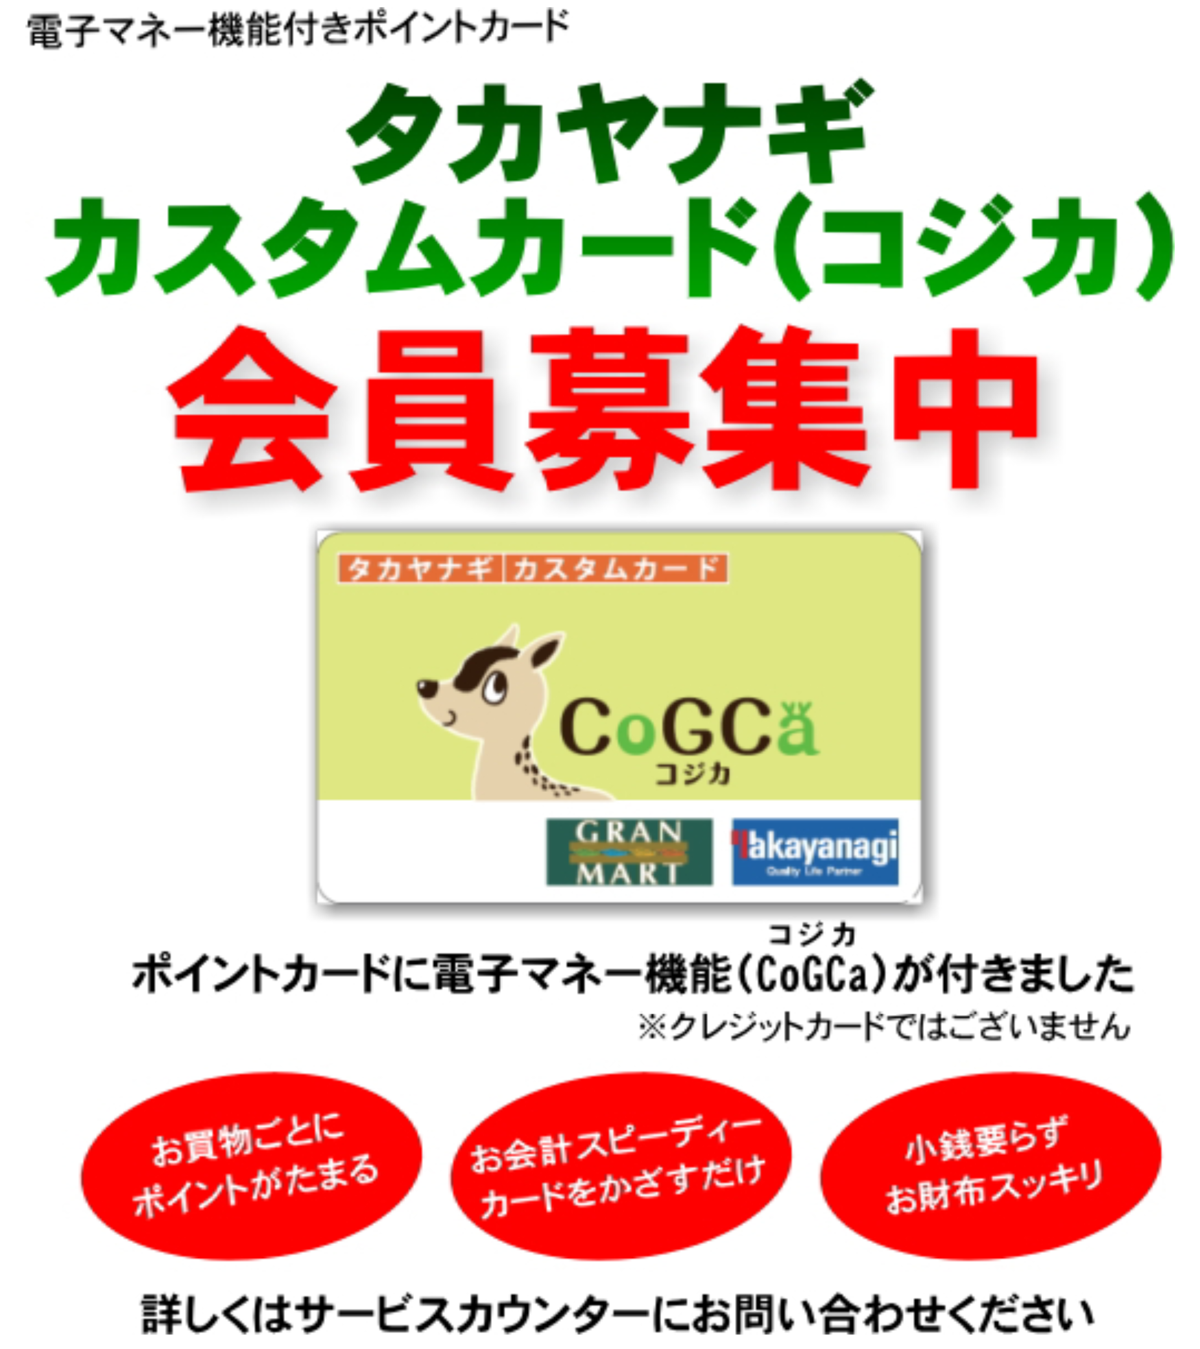 カスタムカード会員 – グランマートタカヤナギ・秋田のスーパーマーケット